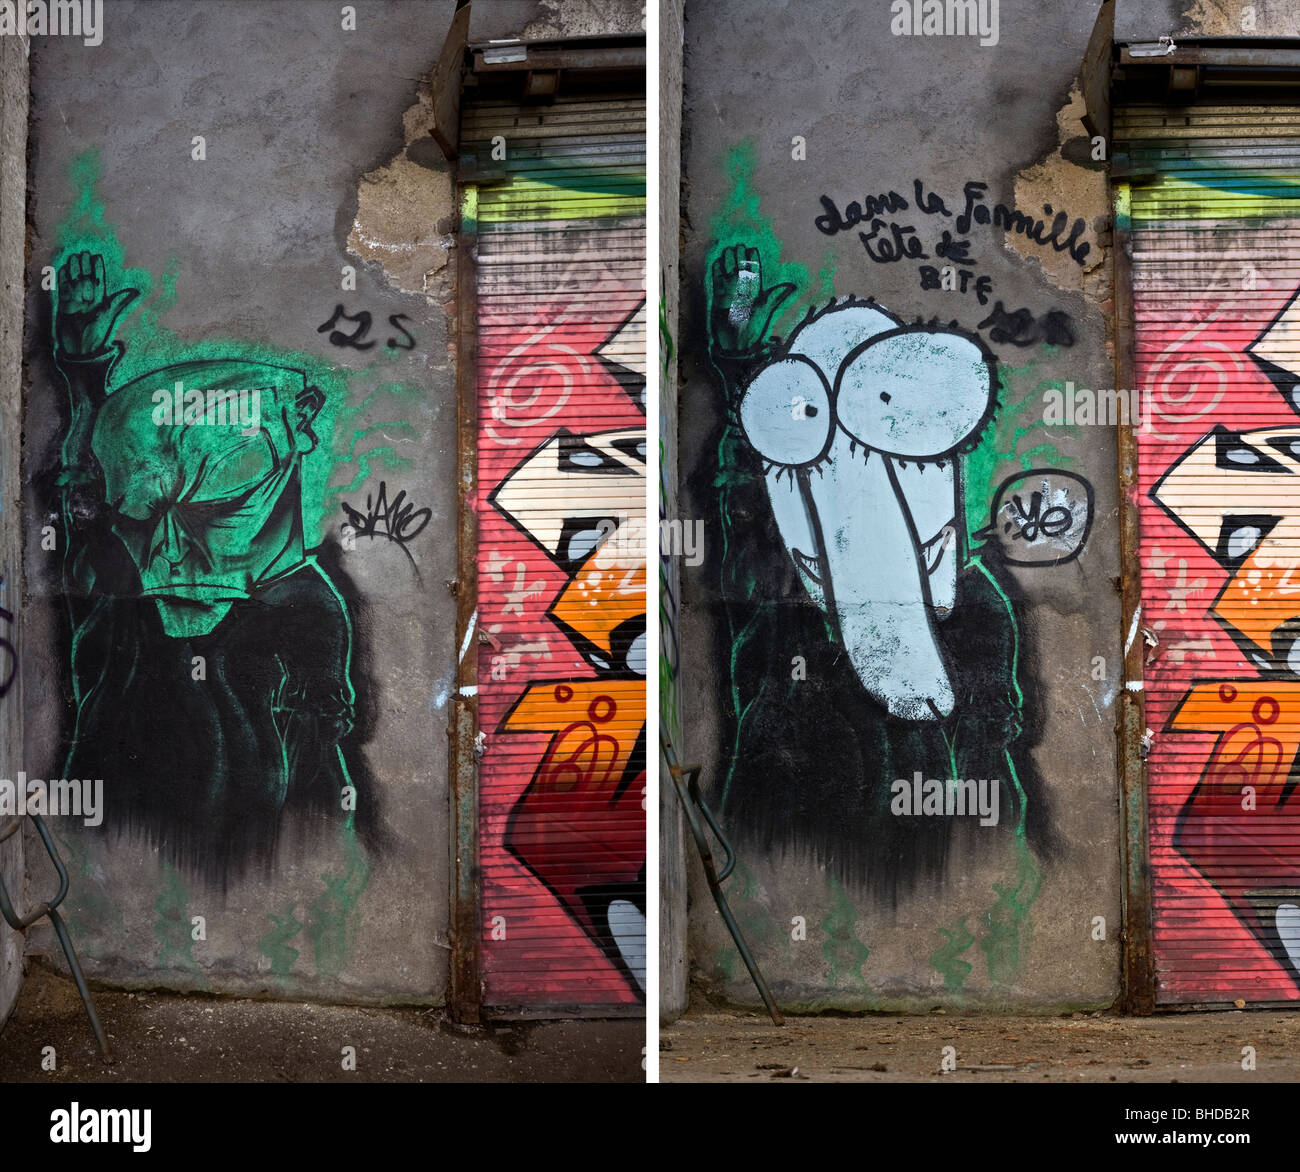 Auf lange Sicht, Entwicklung eines Stückes von Graffiti an der Wand (Vichy  - Frankreich). Vichy, Évolution Dans le temps d ' un Graffiti  Stockfotografie - Alamy